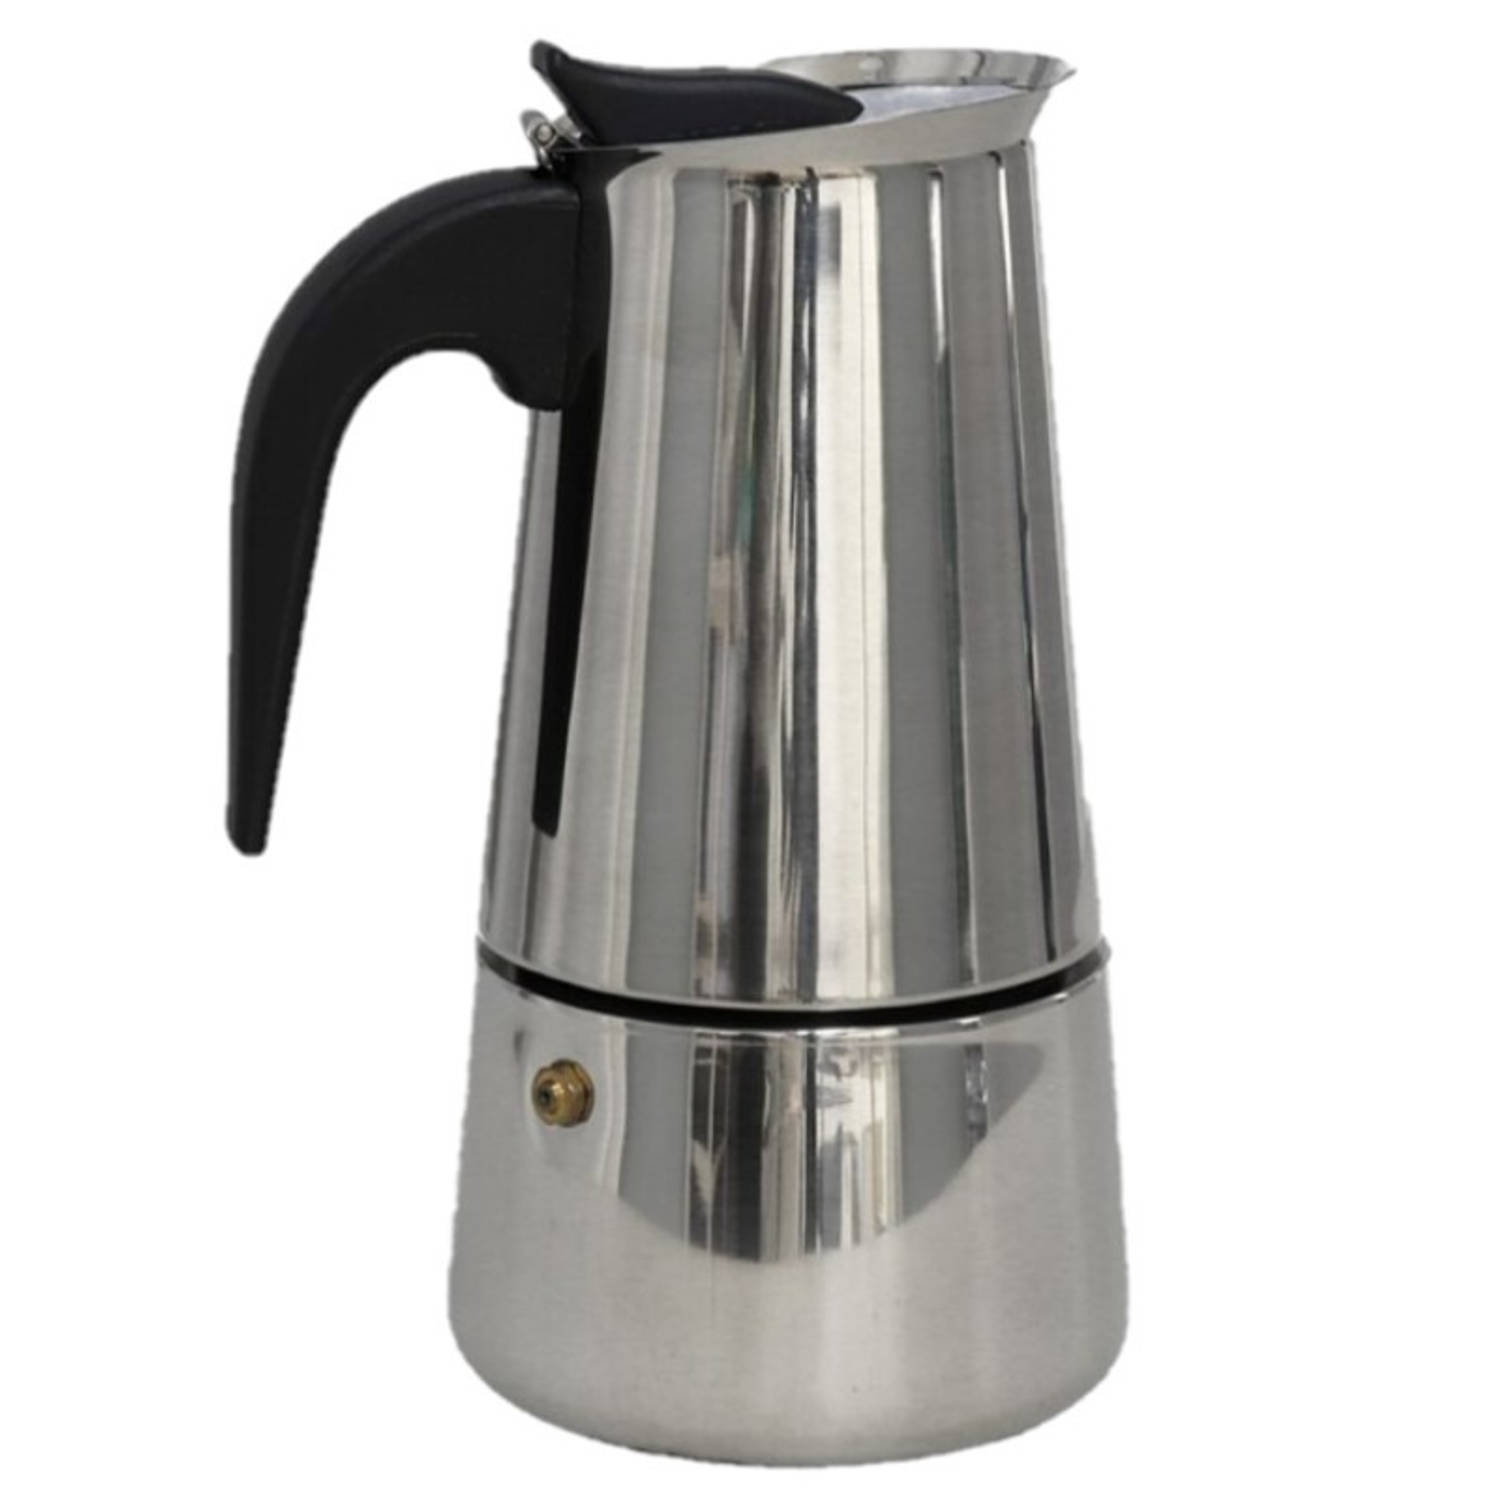 Zilveren percolator / espresso koffie apparaat voor 4 kopjes RVS - Percolators